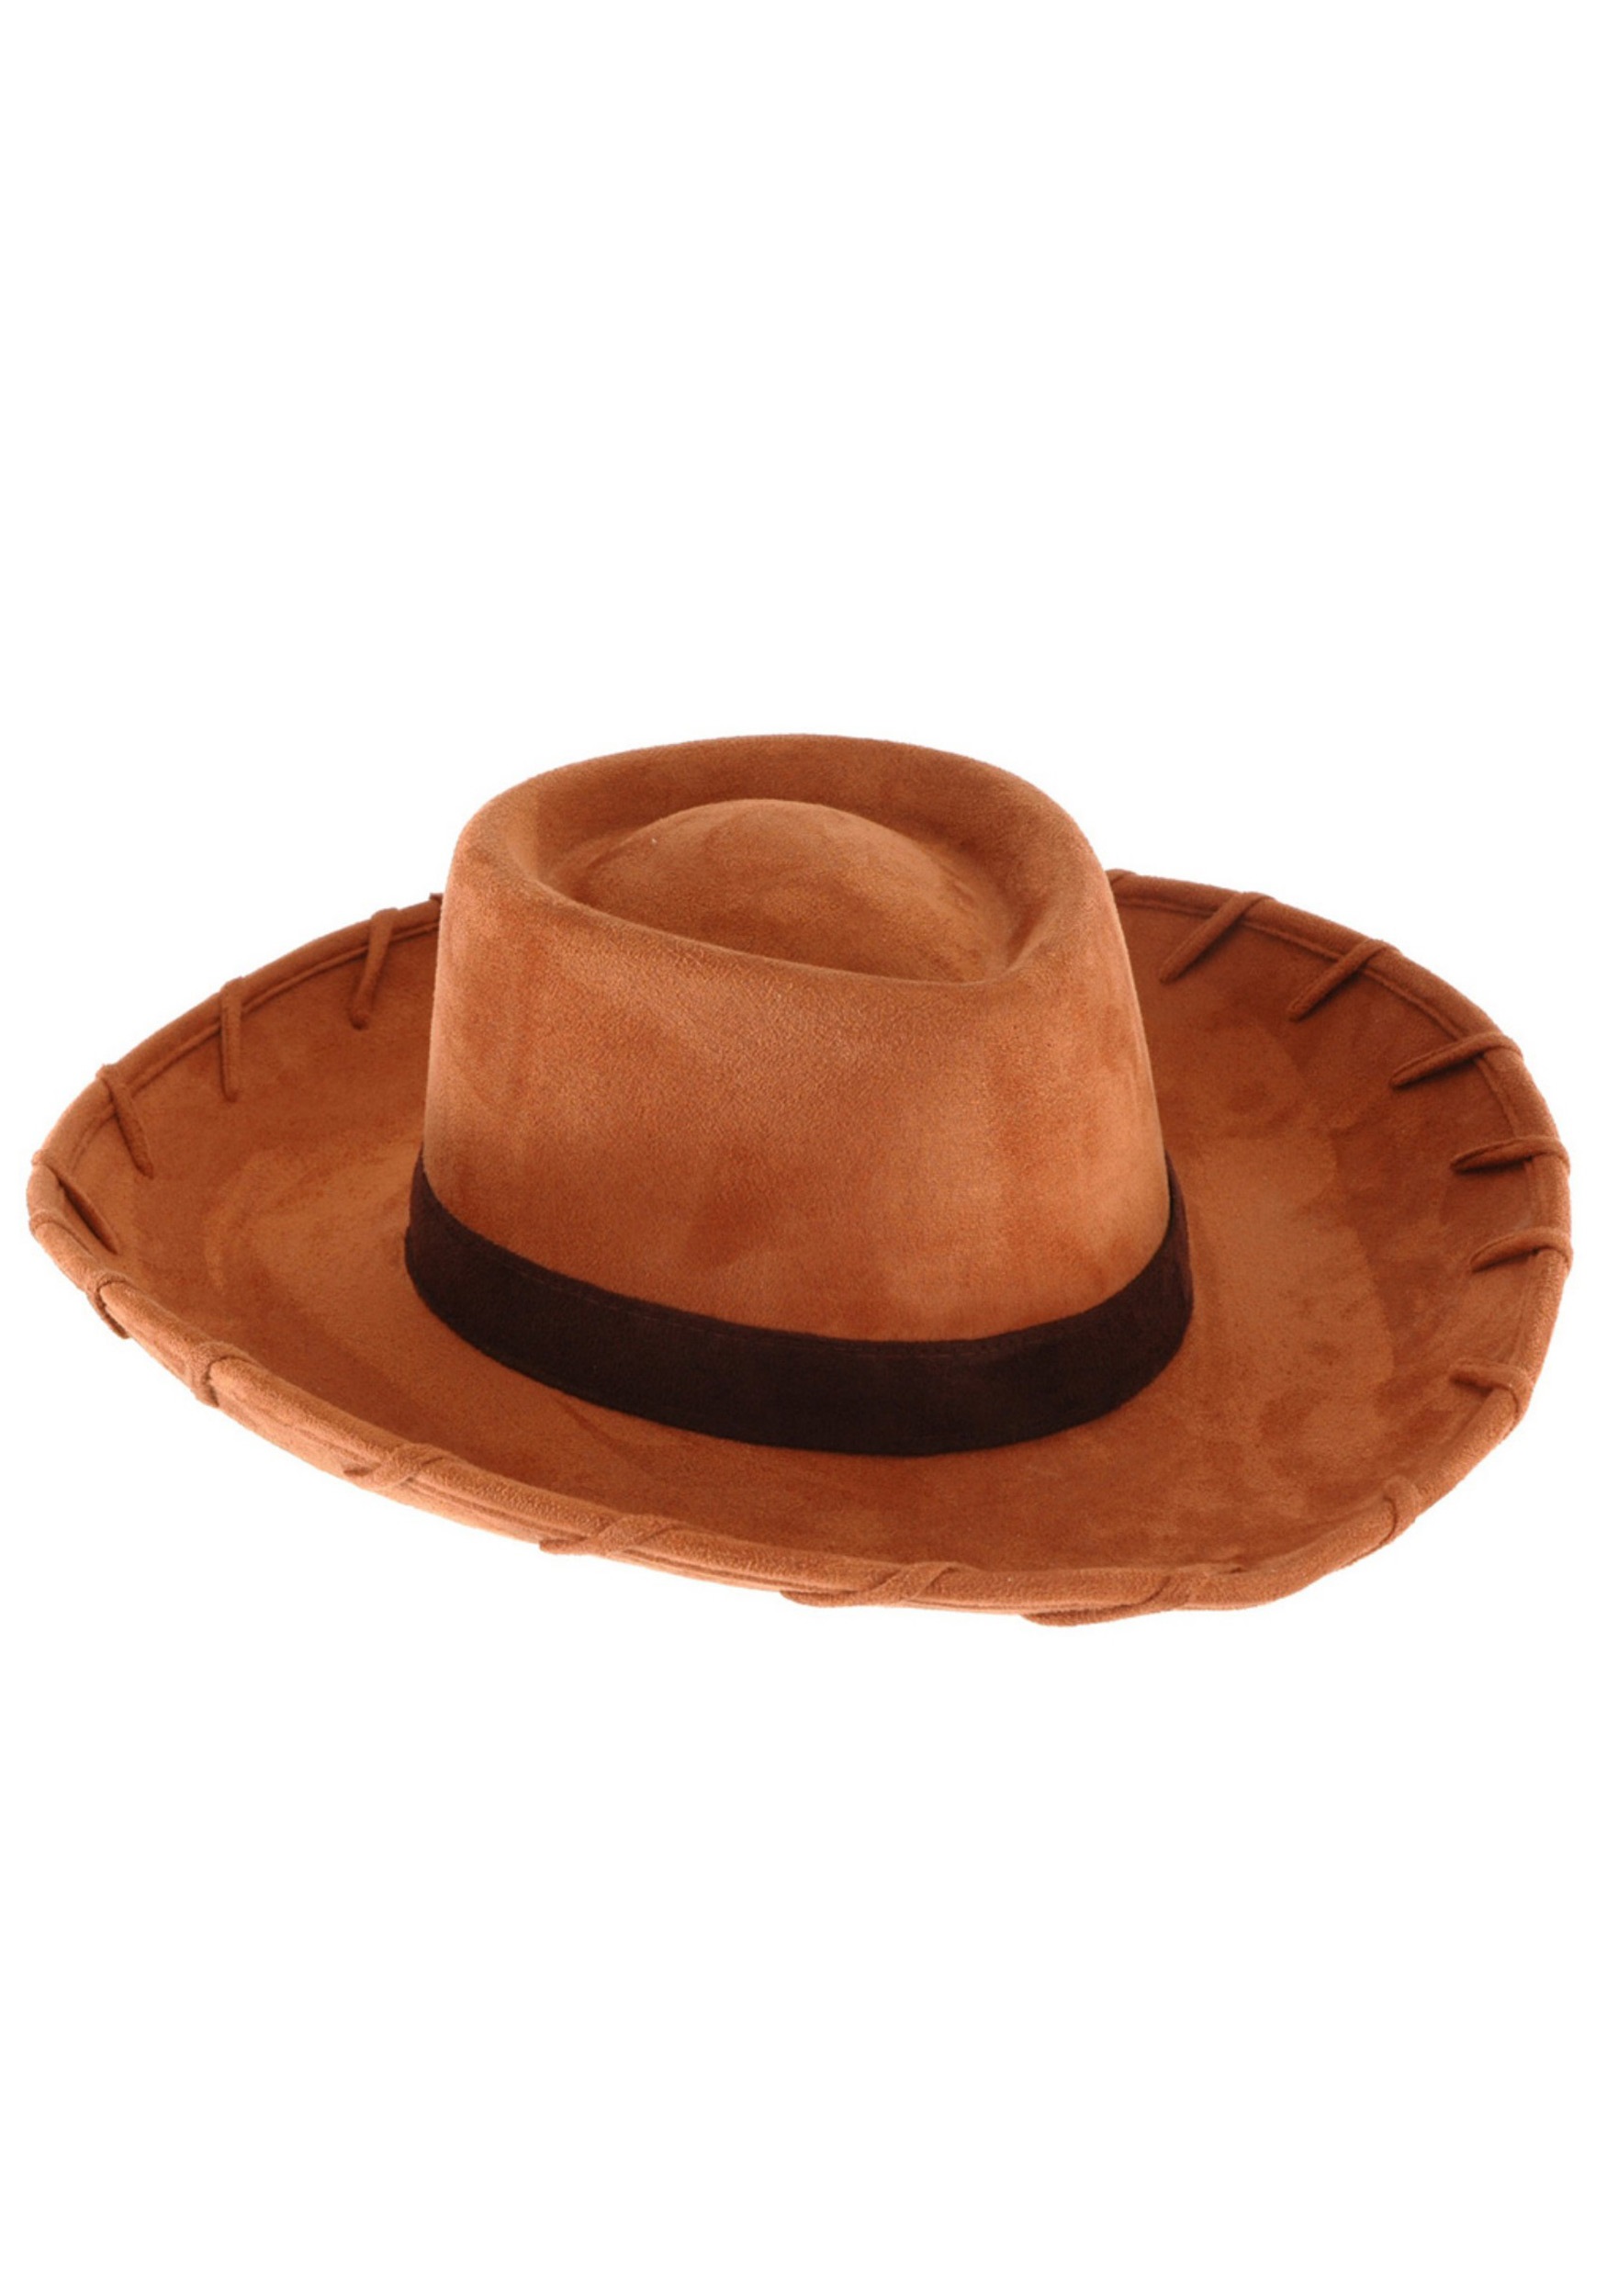 woodys hat flick